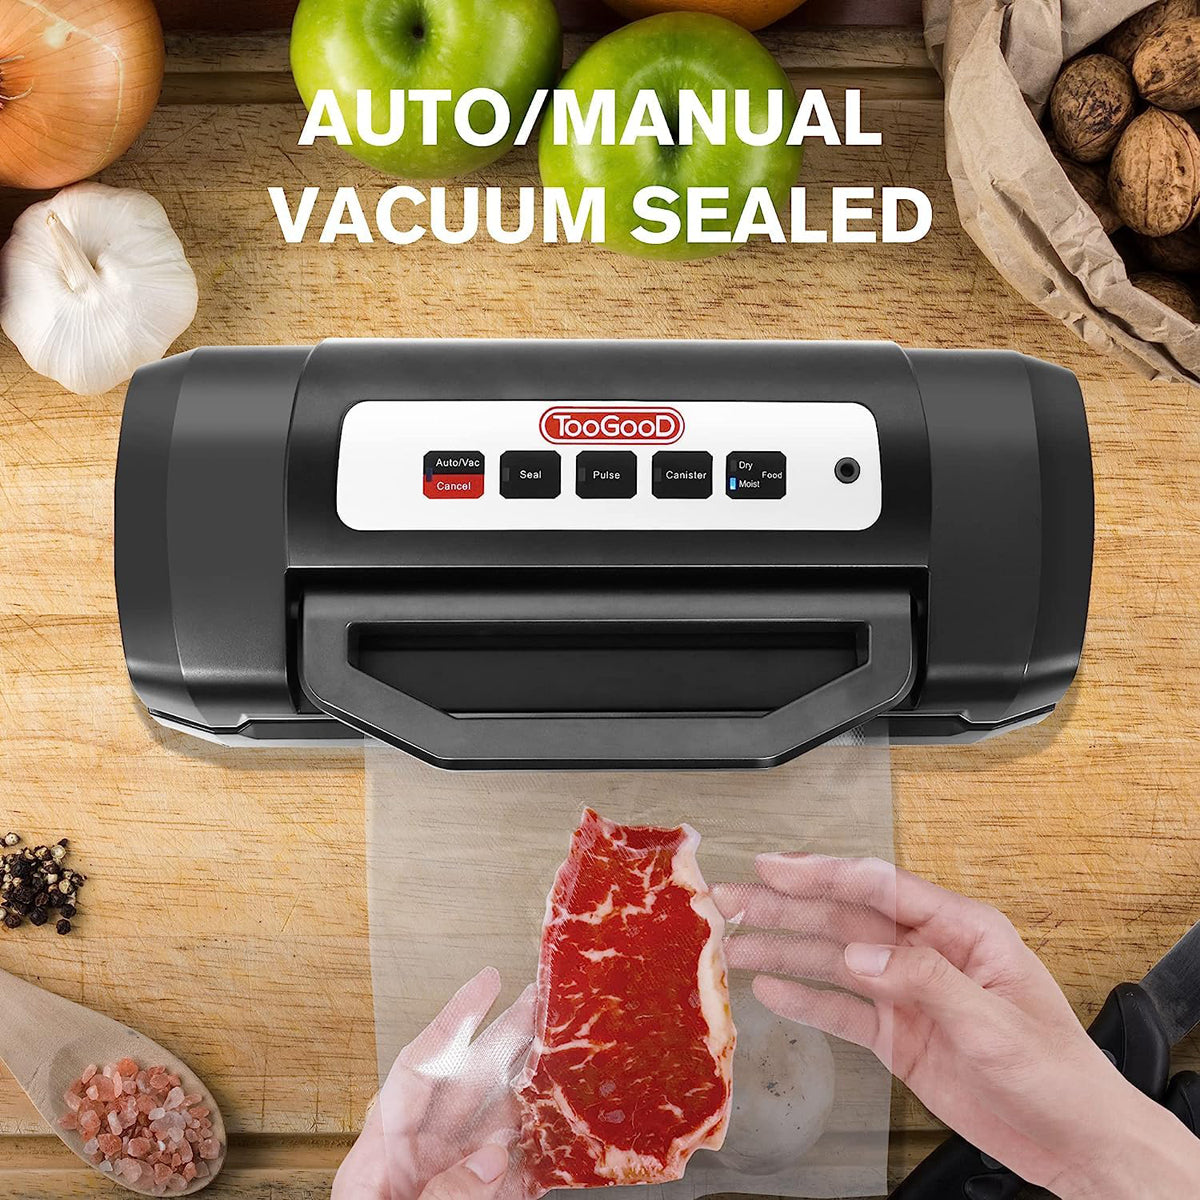 Auto / Manual Vacuum Sealed